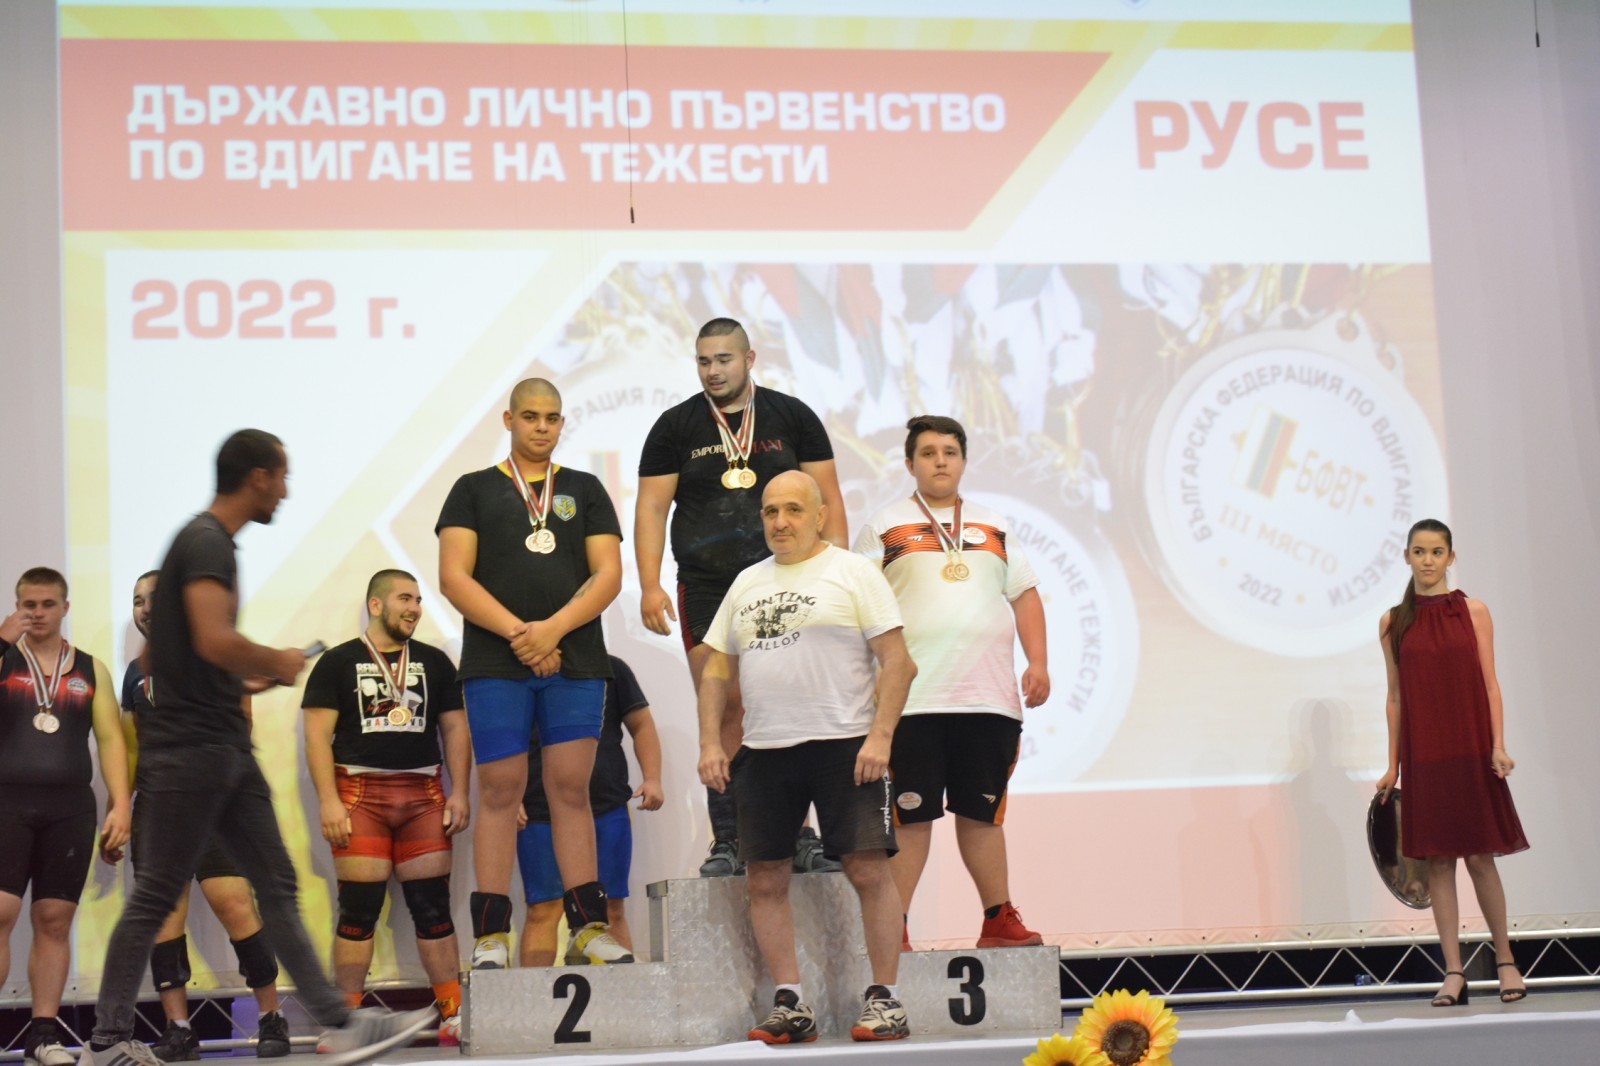 12 златни медала за ТСК – Русе в четвъртия ден на Държавното лично първенство